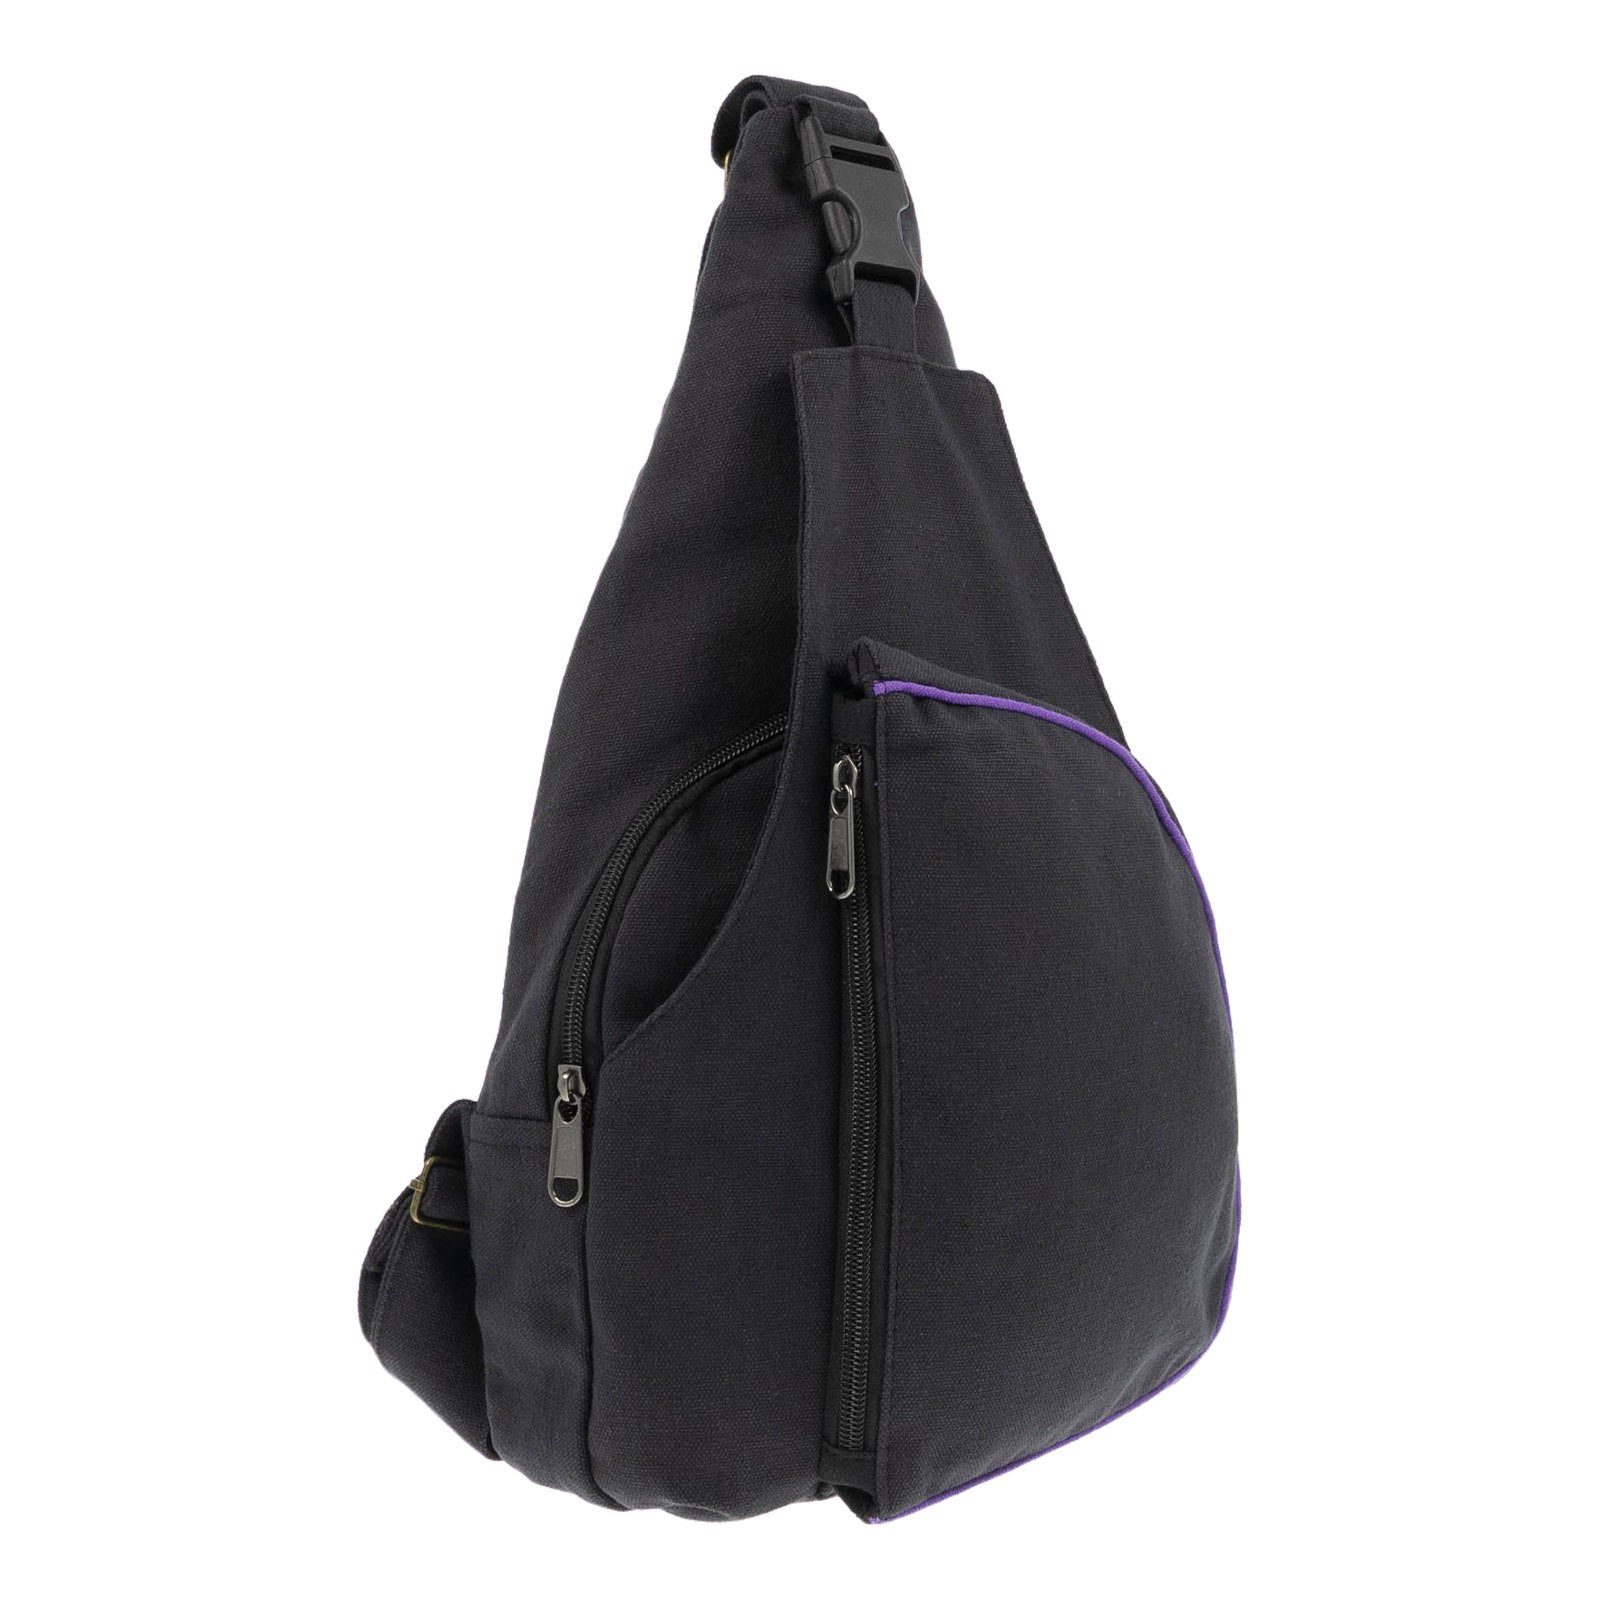 Bodybag Slingbag Rucksack 1 Riemen Camel Active Journey Backpack Braun Tasche 